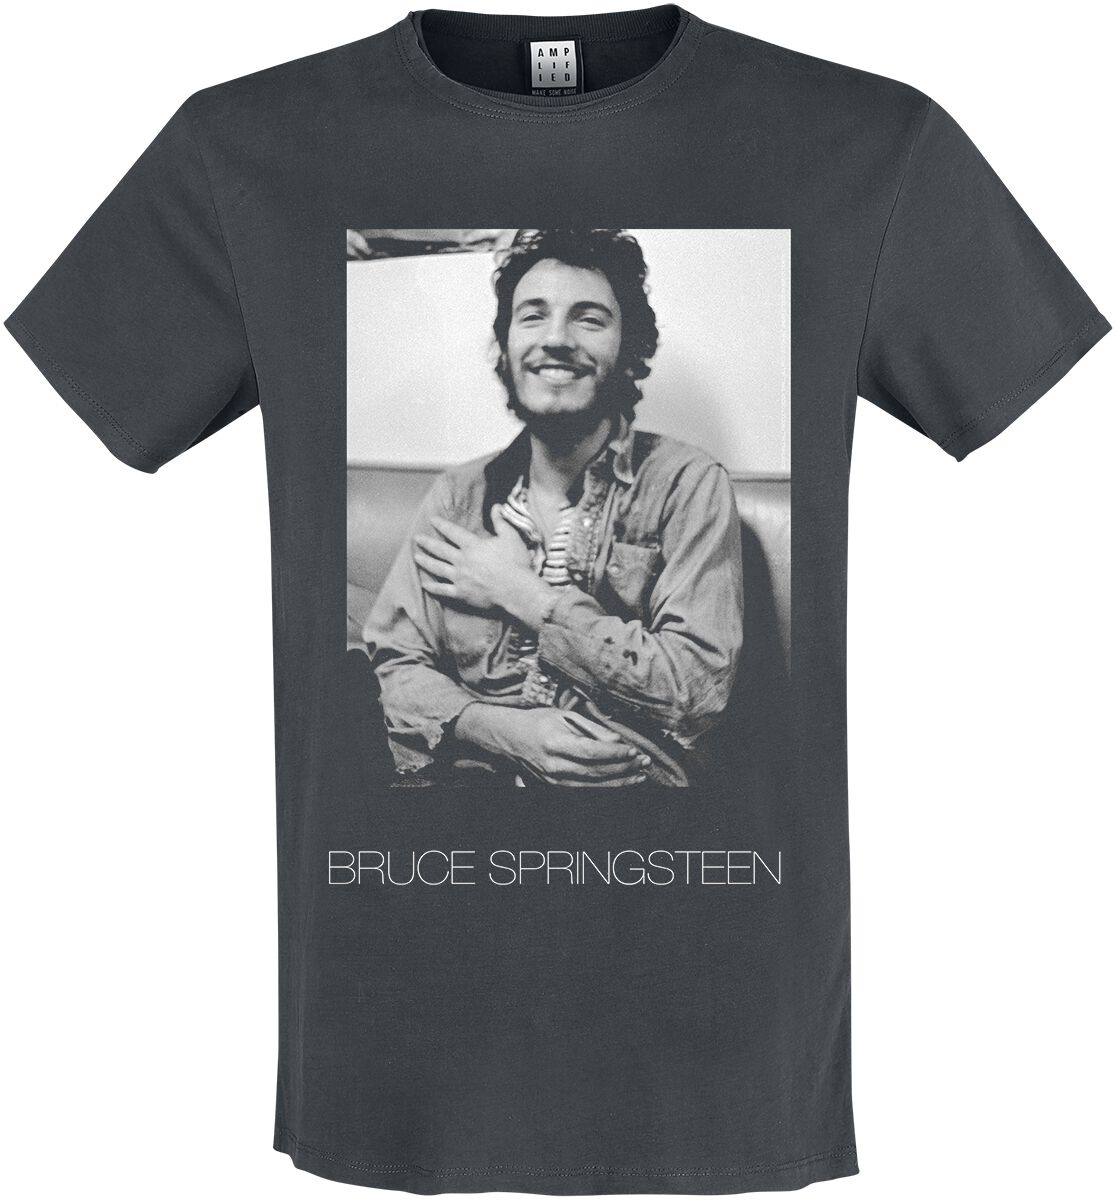 Bruce Springsteen T-Shirt - Amplified Collection - Vintage - XL bis 3XL - für Männer - Größe XL - charcoal  - Lizenziertes Merchandise!